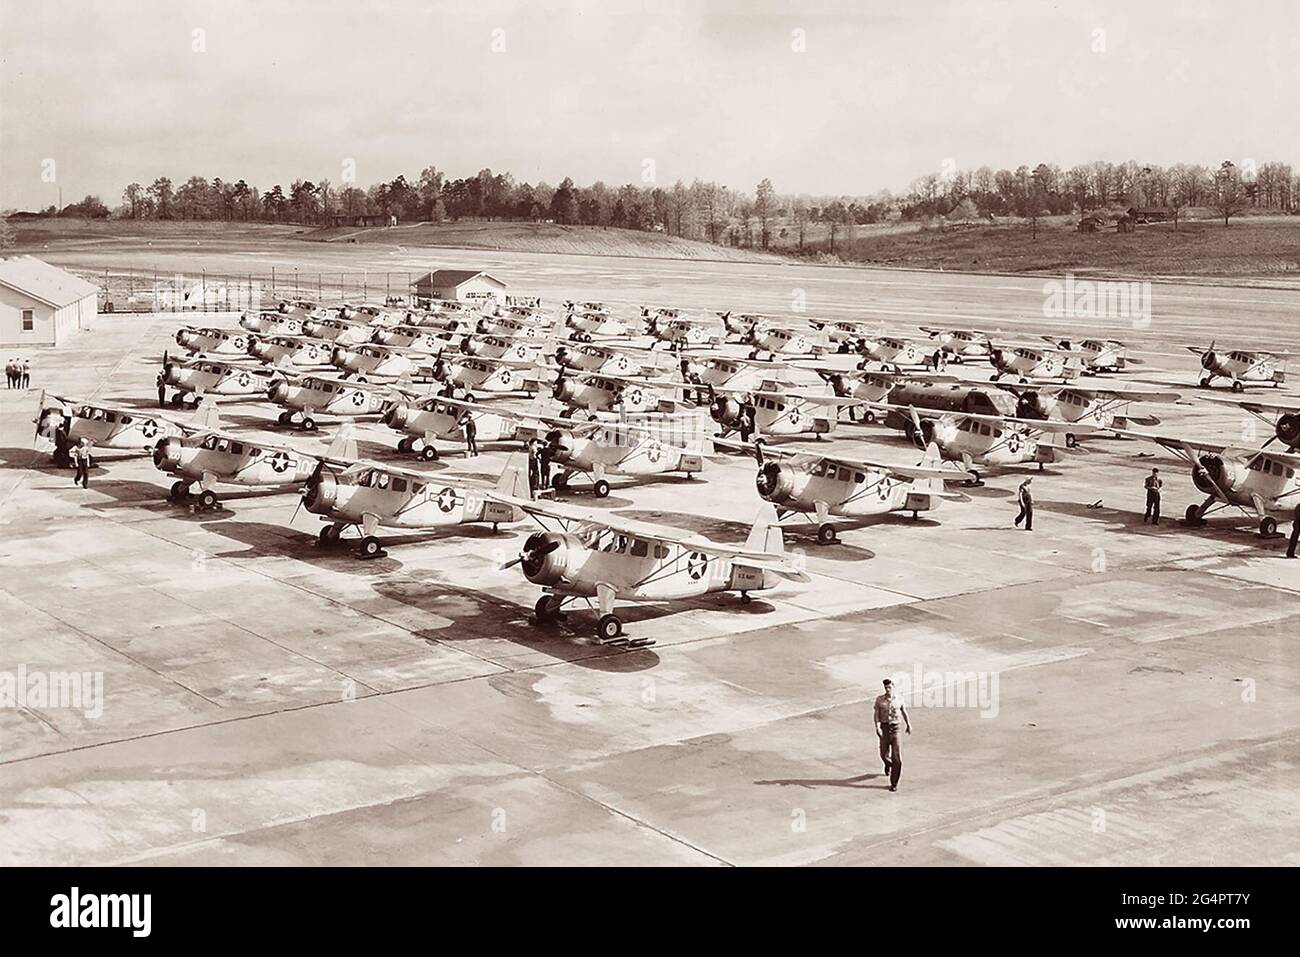 Trainingsflugzeug des Zweiten Weltkriegs, das auf dem Asphalt der Atlanta Naval Air Station – dem aktuellen Standort des Flughafens Peachtree-Dekalb in Chamblee, Georgia, stattfand. (Foto: 15. April 1944) Stockfoto